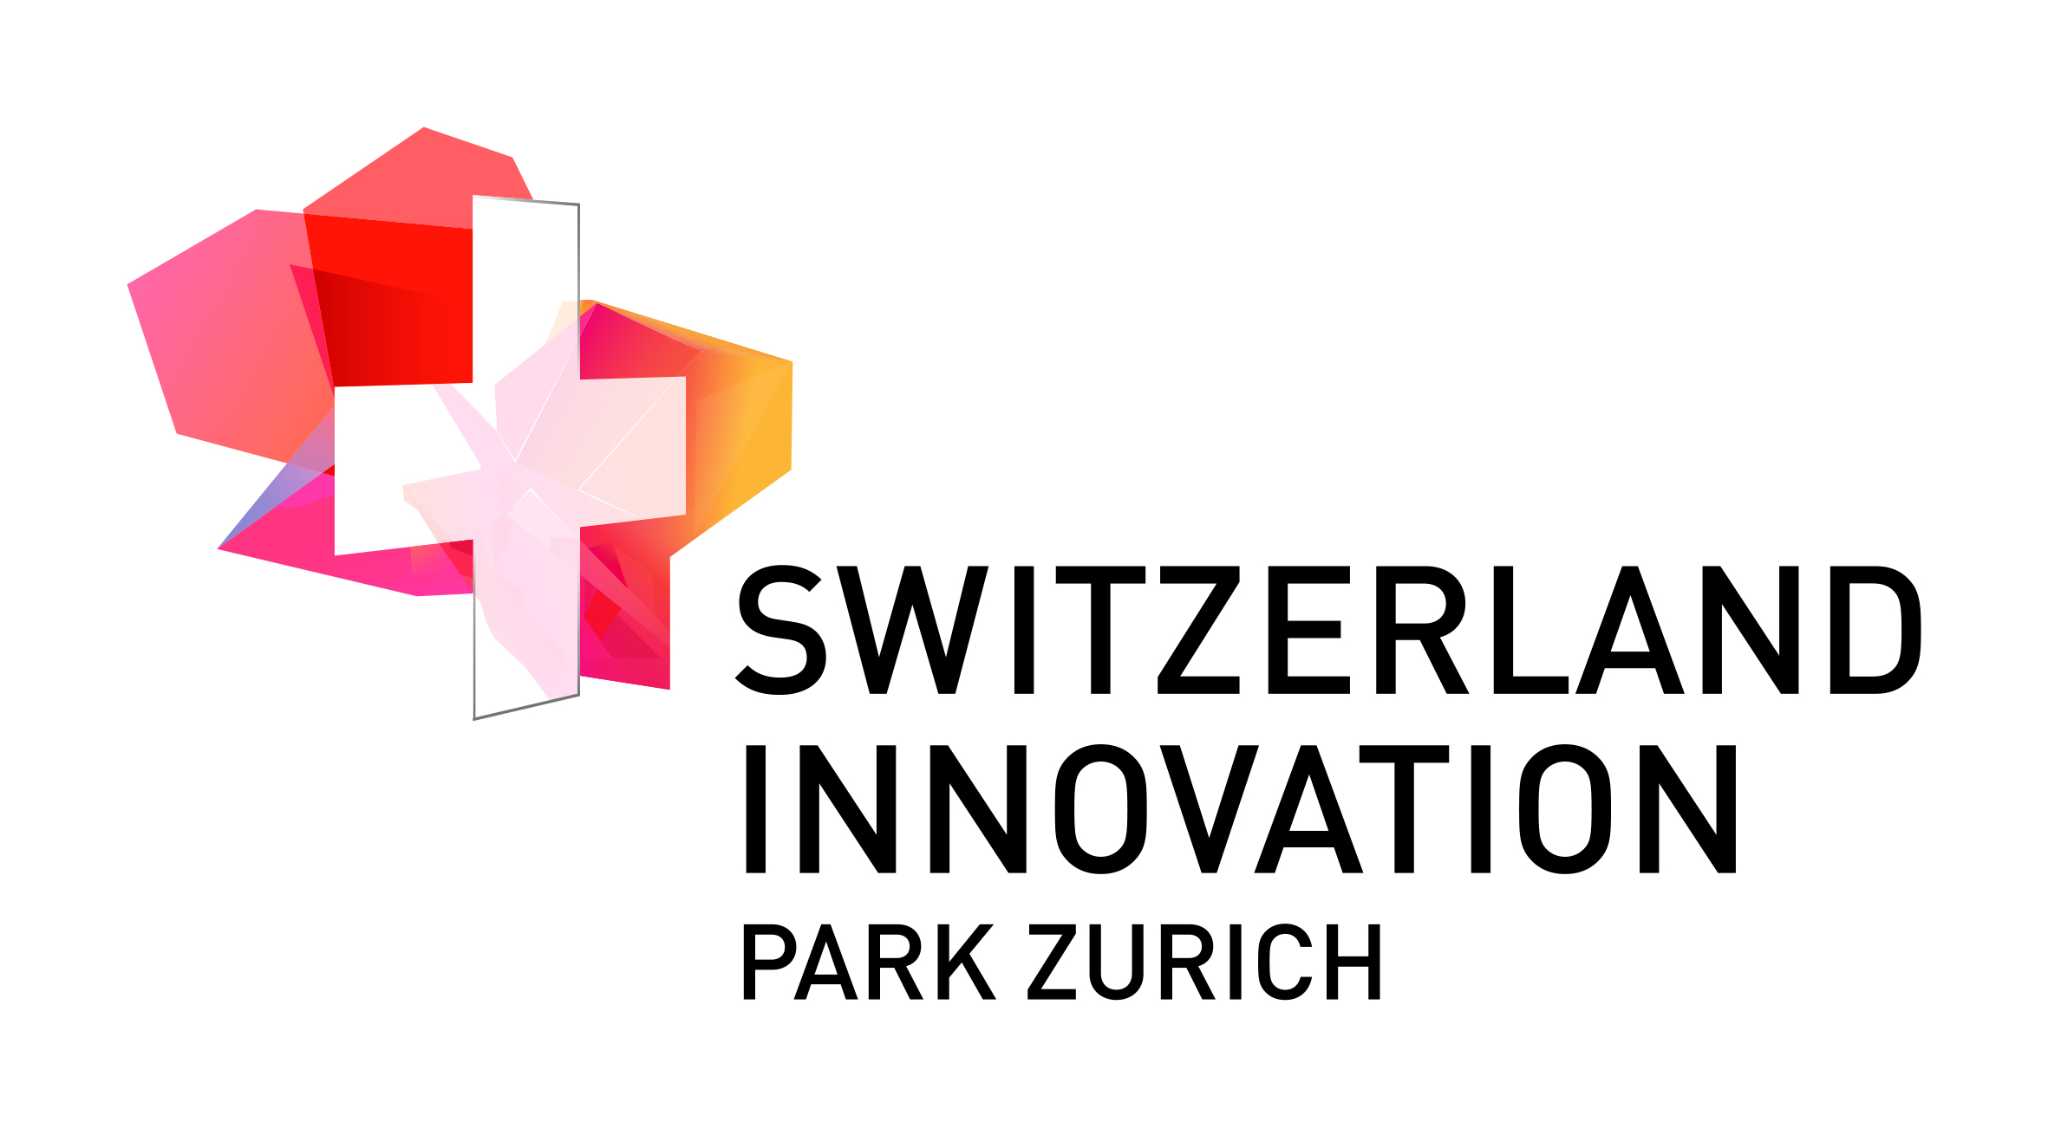 Switzerland Innovation Park Zurich